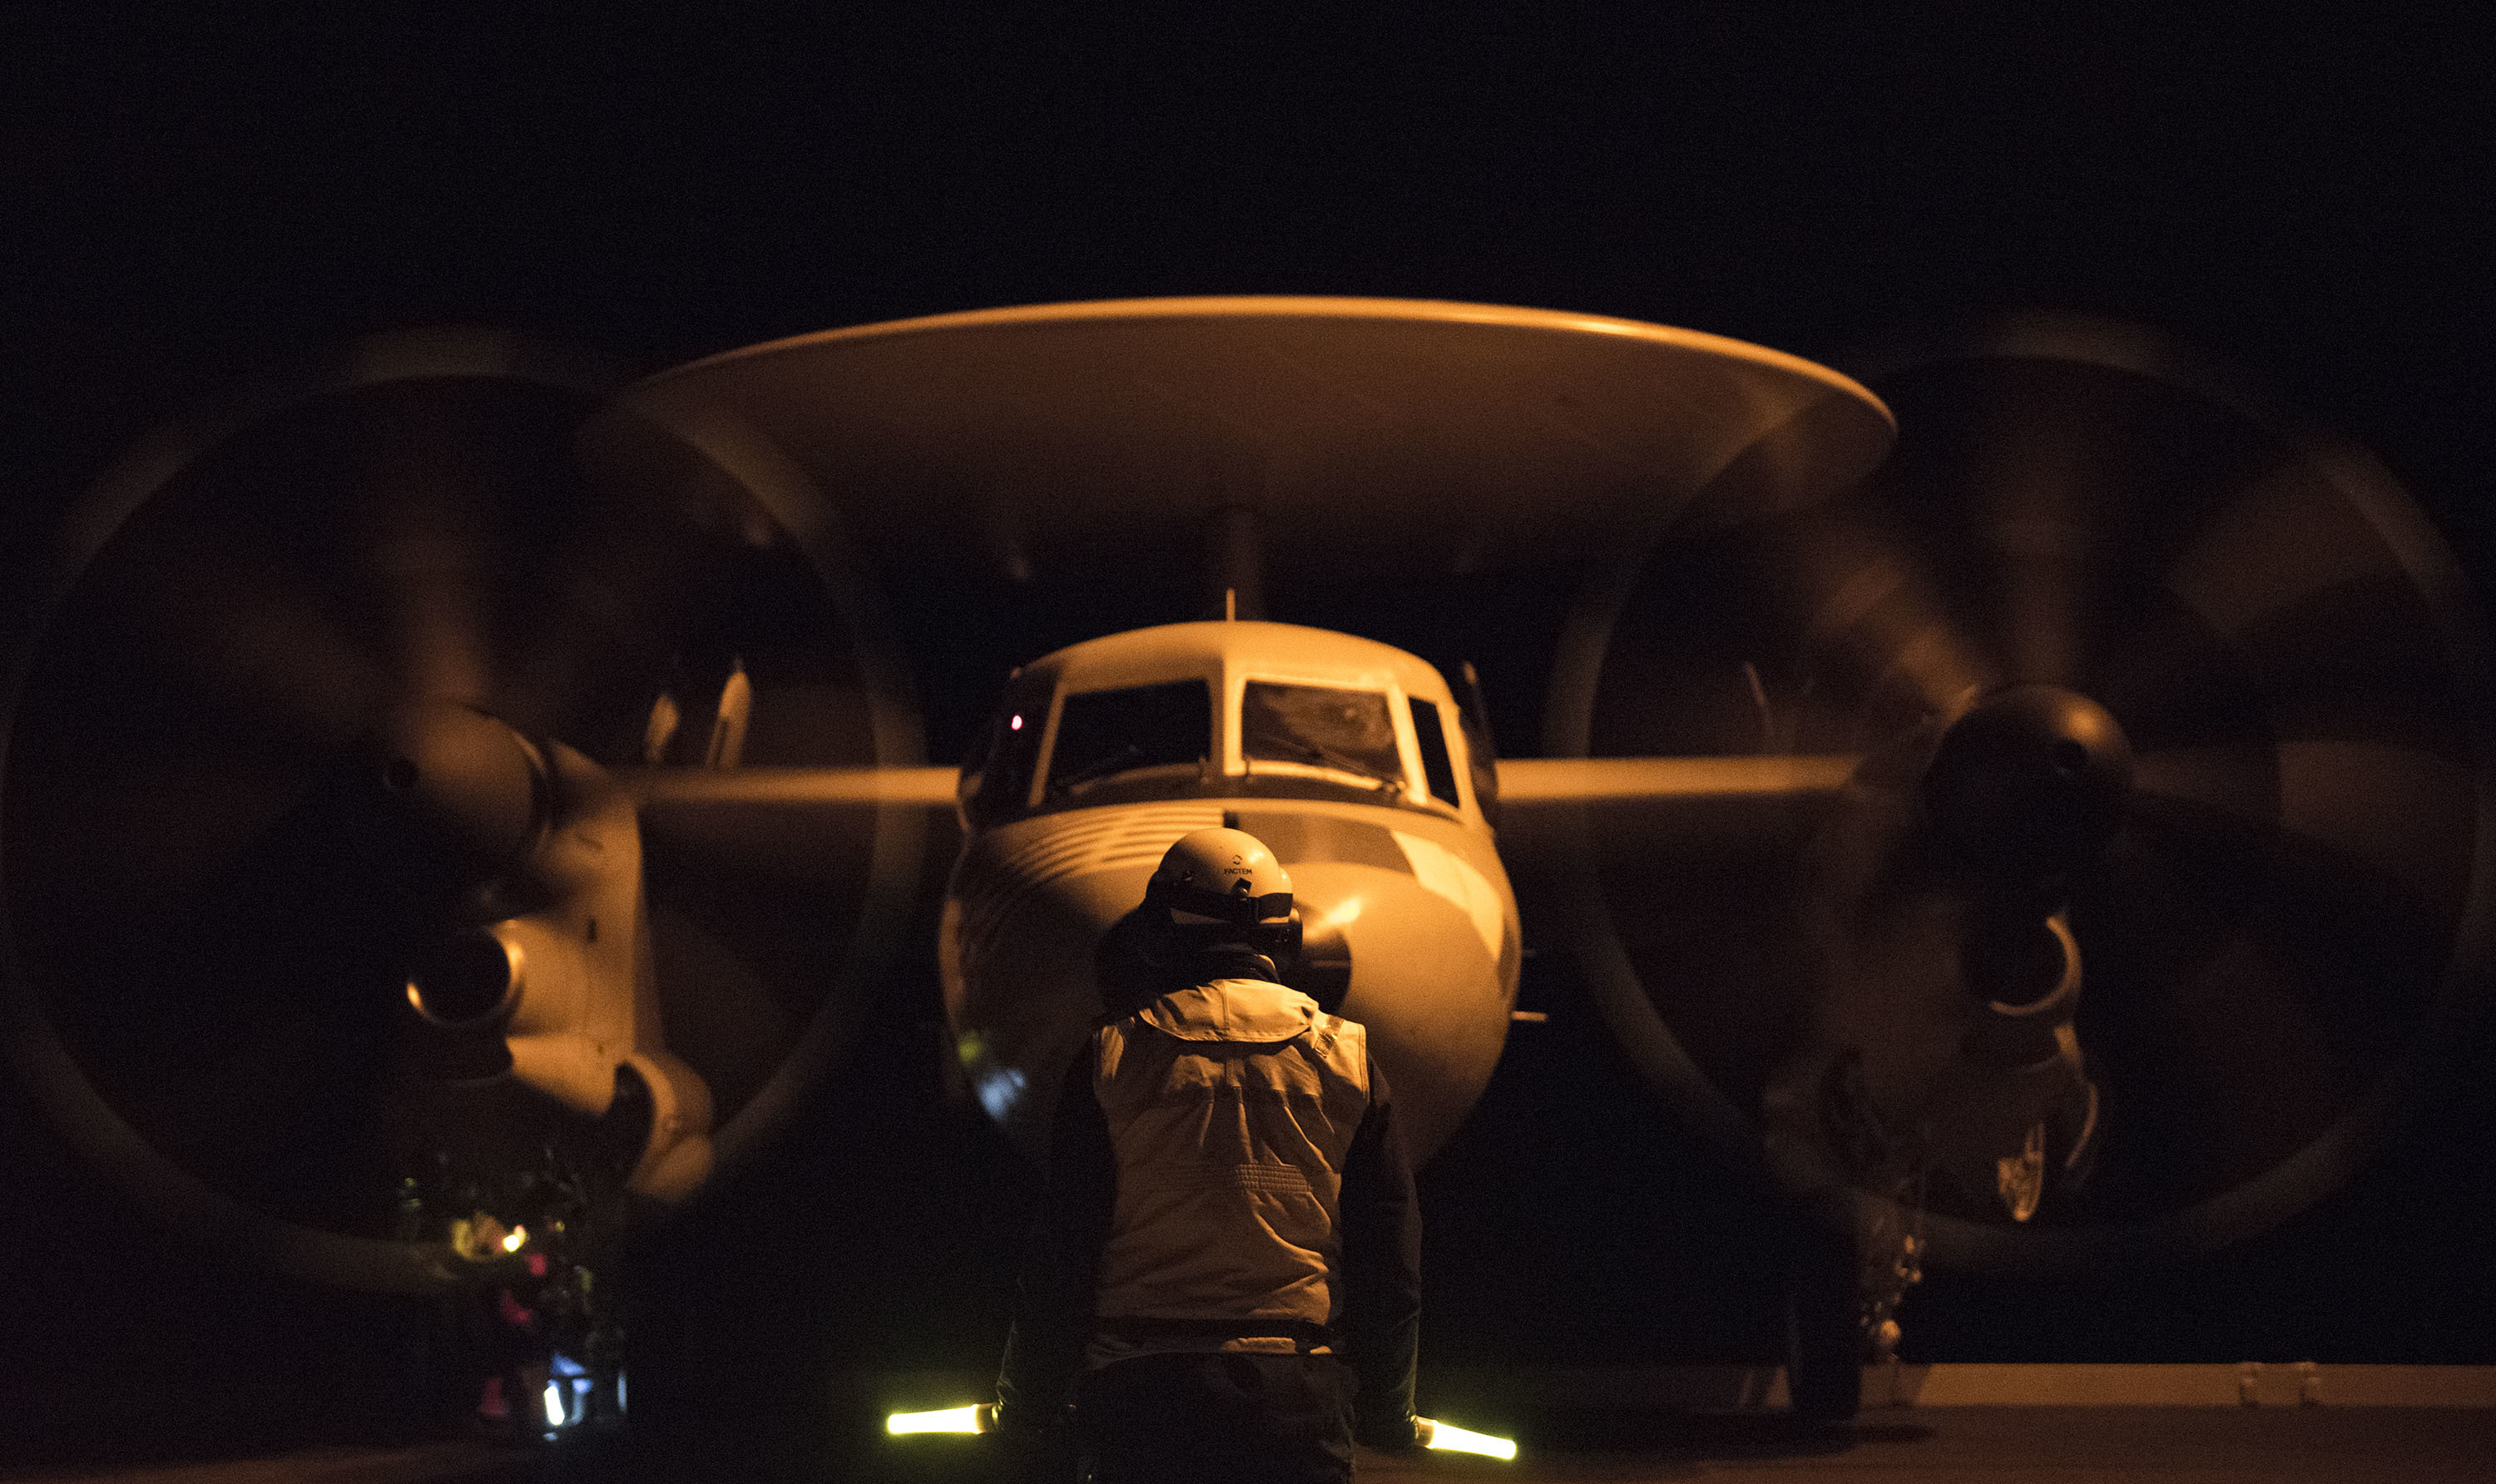 Un avion de guet aérien E2C - Hawkeye se prépare à décoller de nuit du porte-avions USS George H.W. Bush